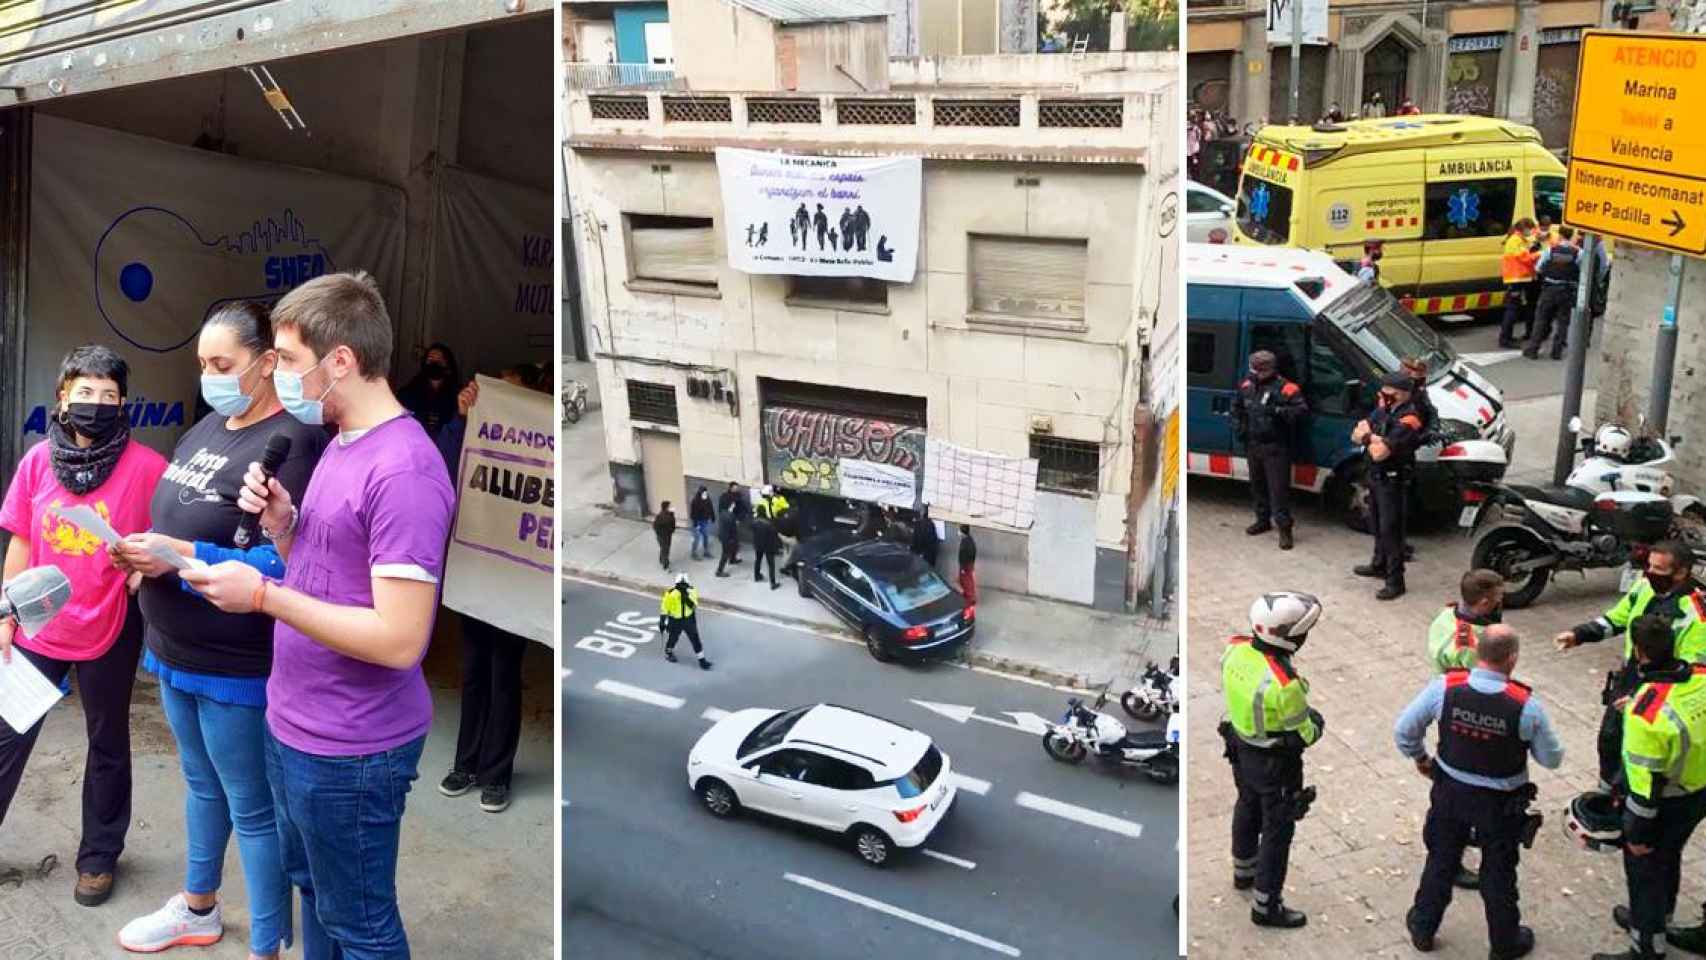 Tres imágenes de la okupación y ataque con un vehículo a la casa okupada de Barcelona / CG